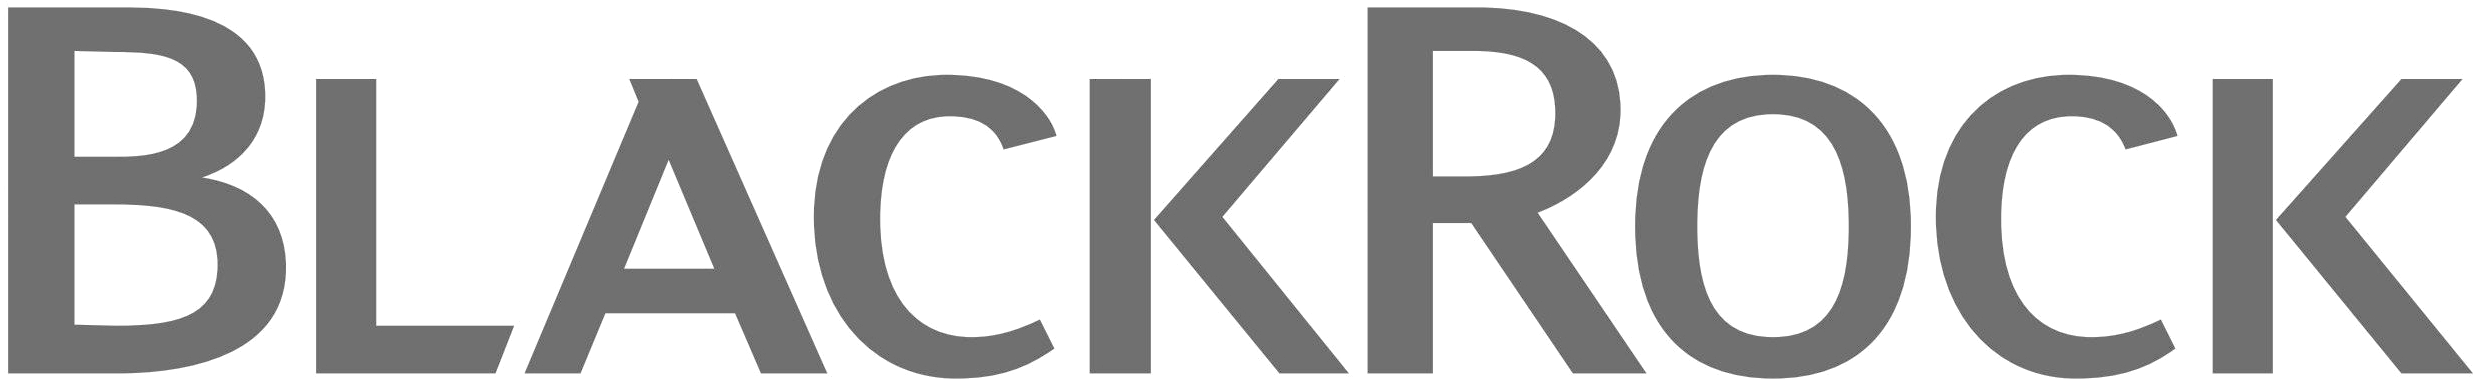 Hallmark Typeface Letterhead Emblem Logo PNG